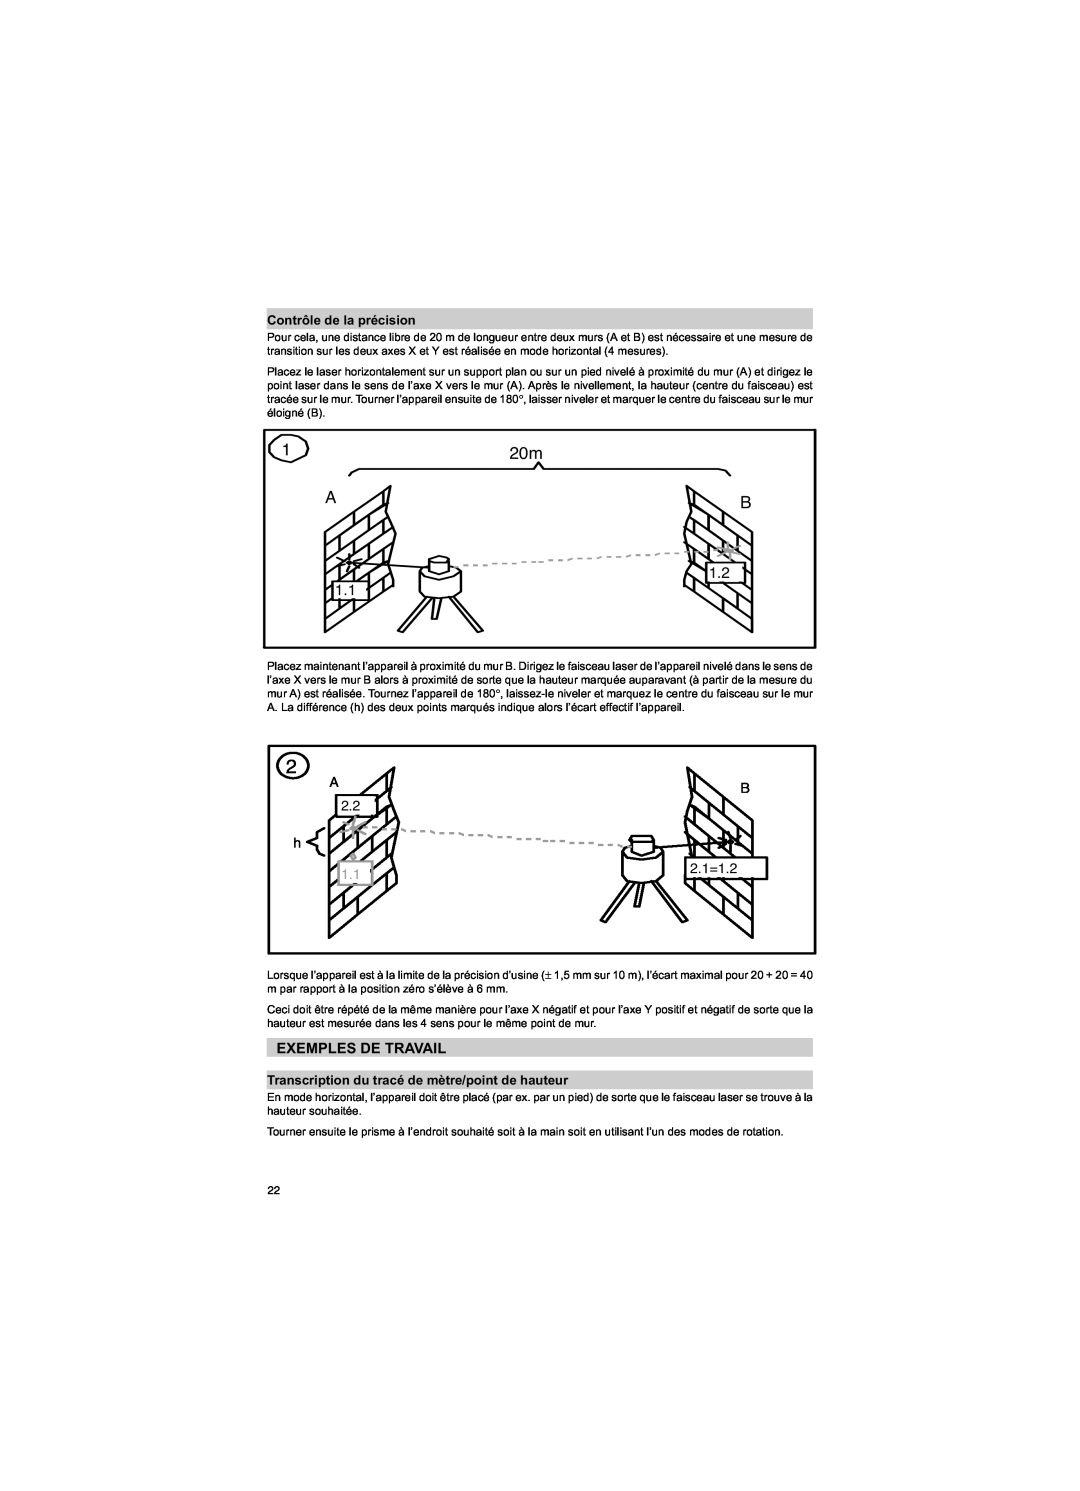 Trimble Outdoors HV301 Exemples De Travail, Contrôle de la précision, Transcription du tracé de mètre/point de hauteur, A 